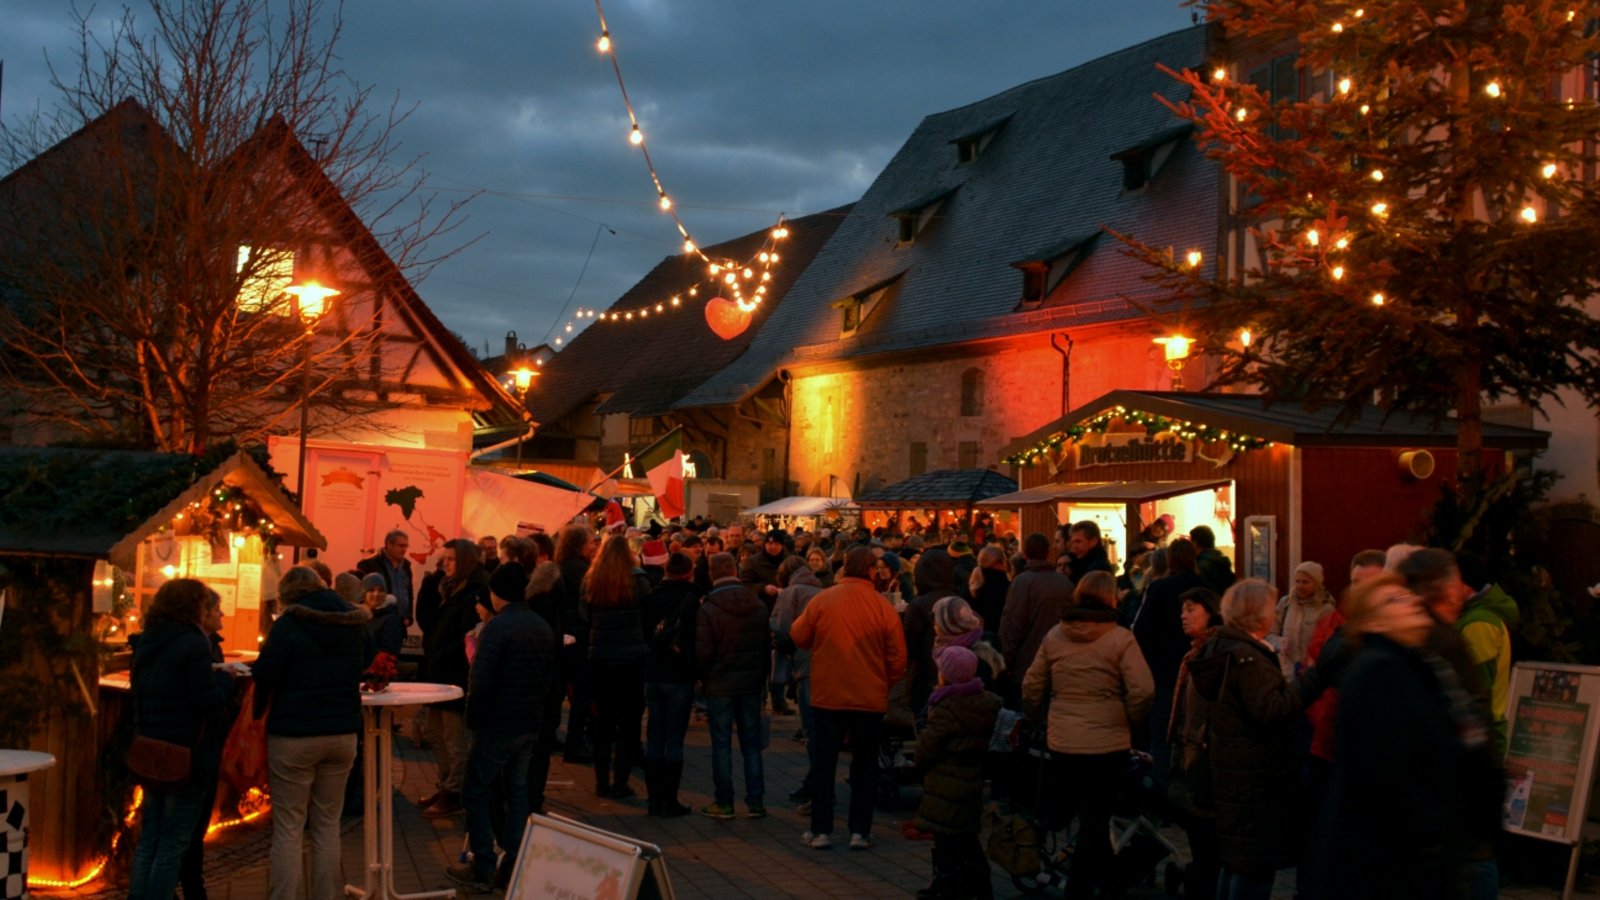 Stimmungsvolles Ambiente: der Weihnachtsmarkt in Illingen.  Foto: p